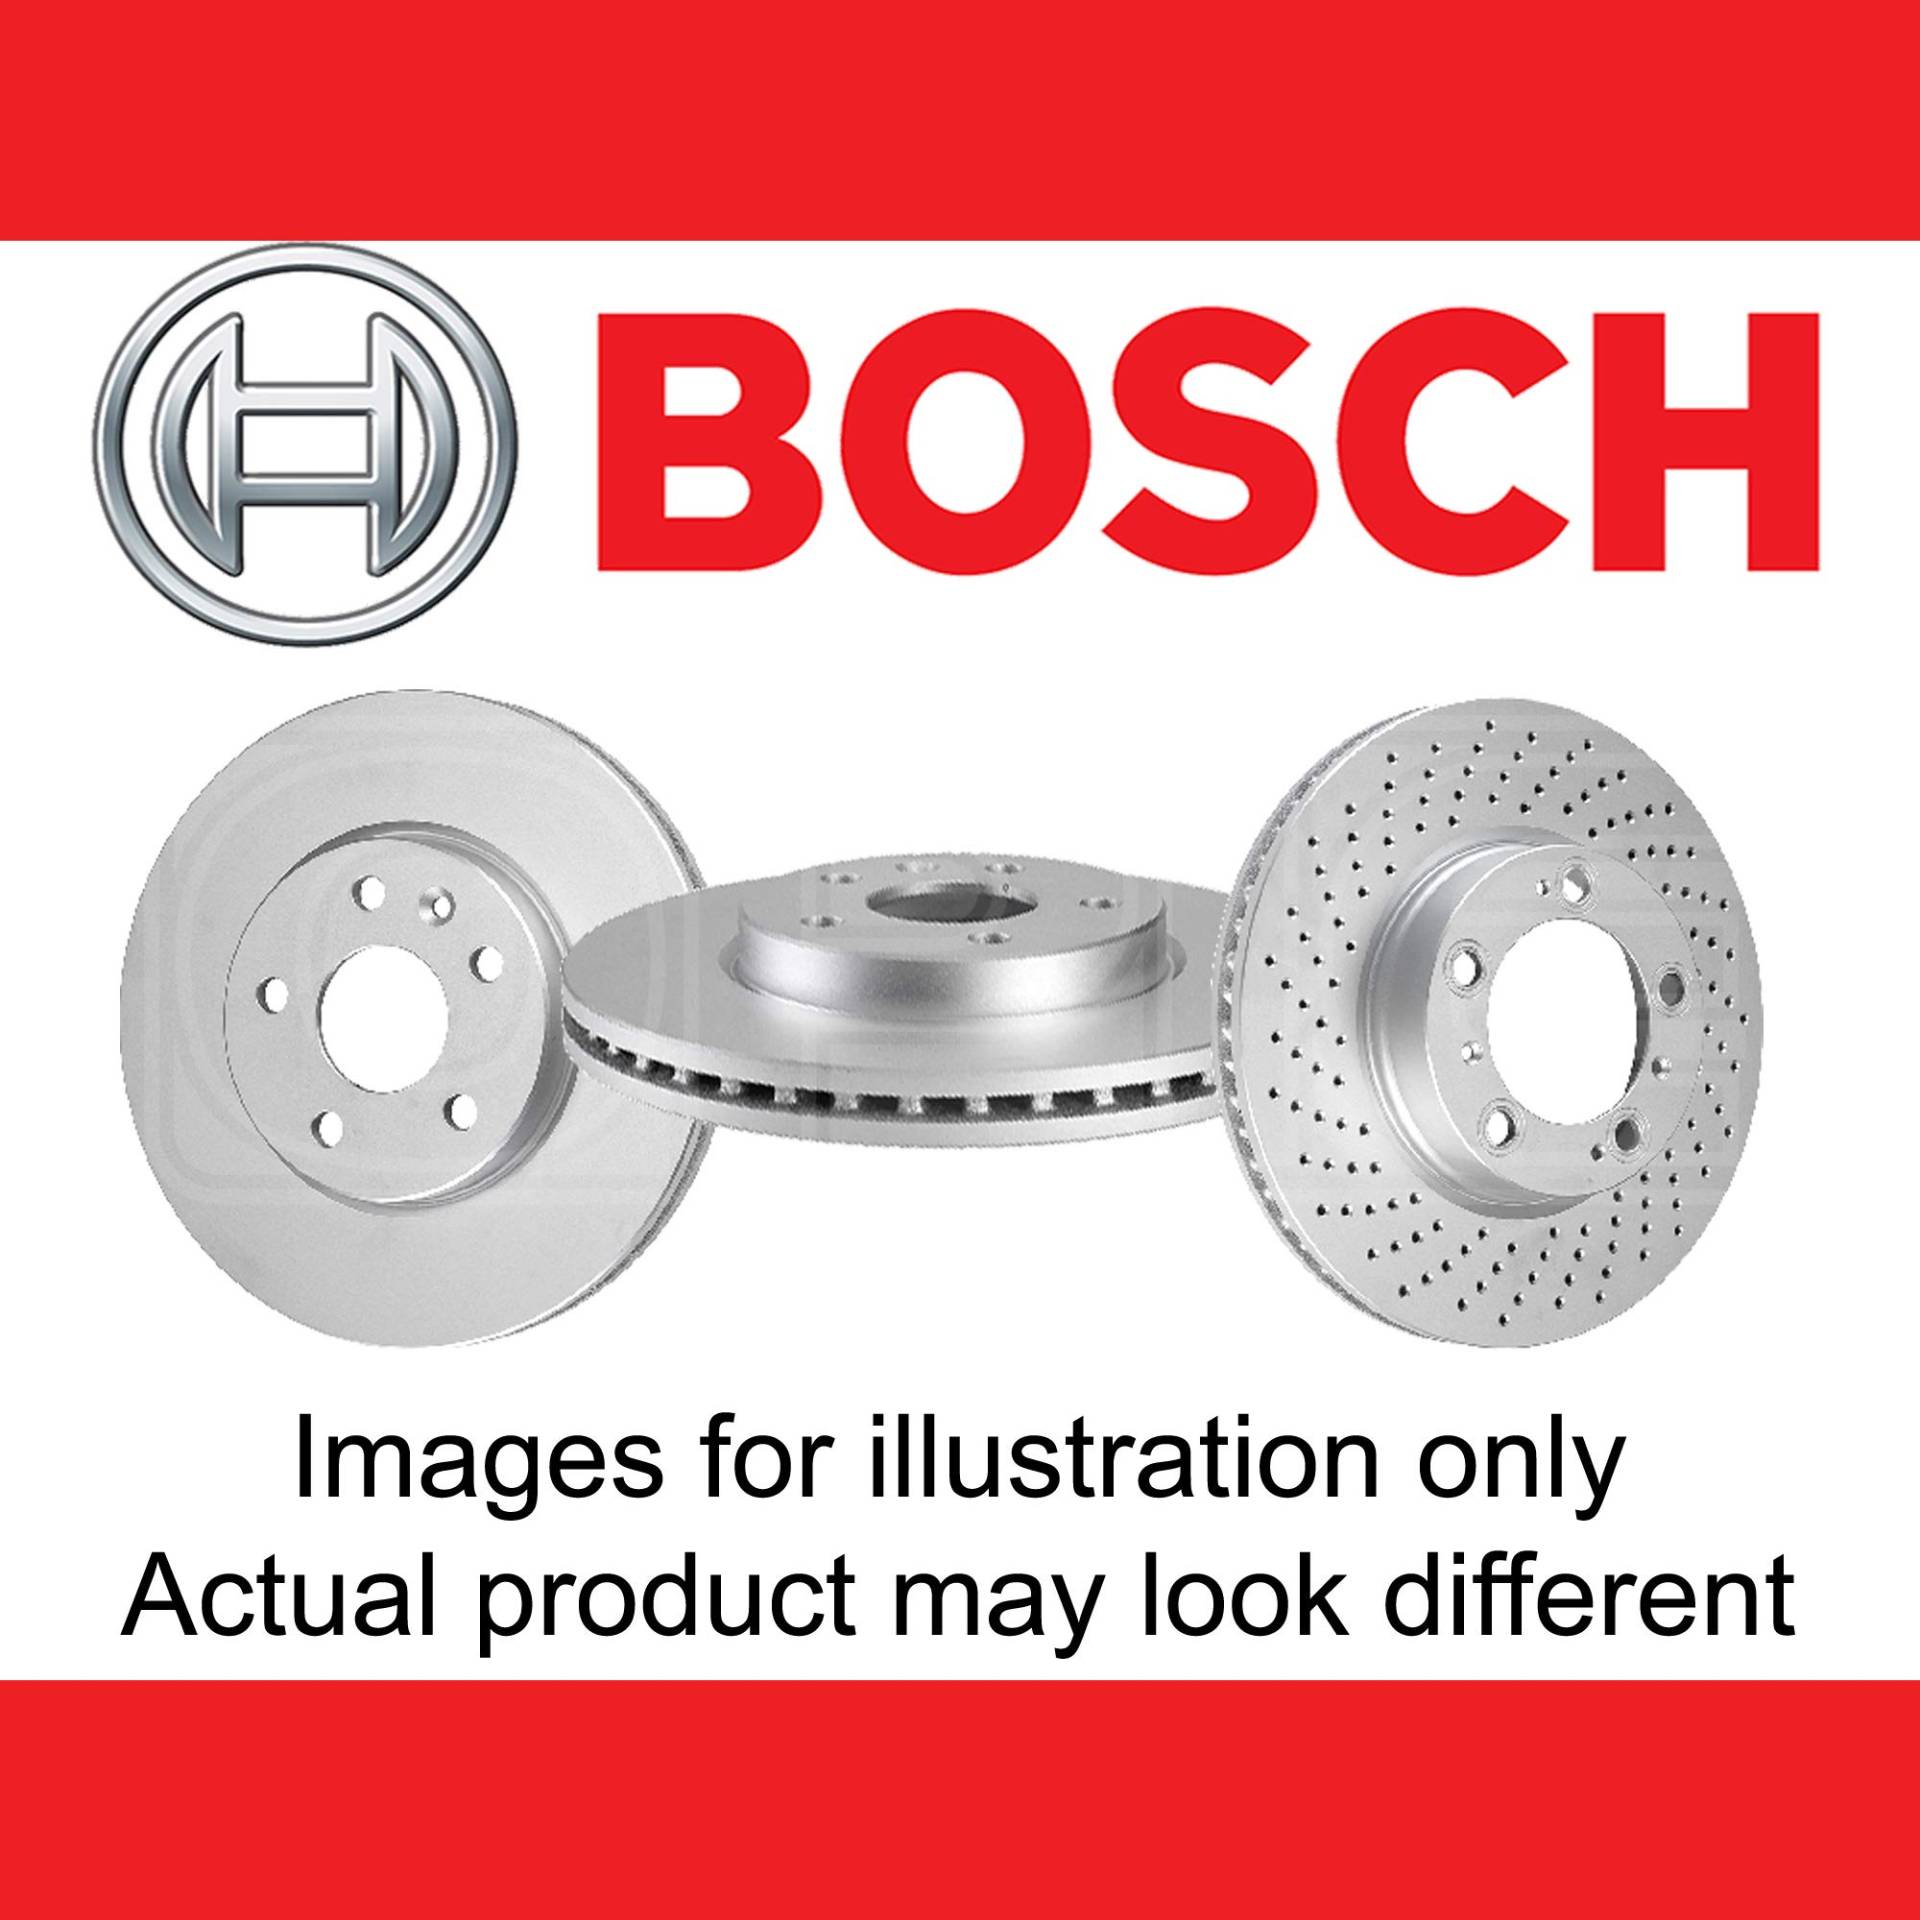 Bosch BD1895 Bremsscheiben - Vorderachse - ECE-R90 Zertifizierung - zwei Bremsscheiben pro Set von Bosch Automotive